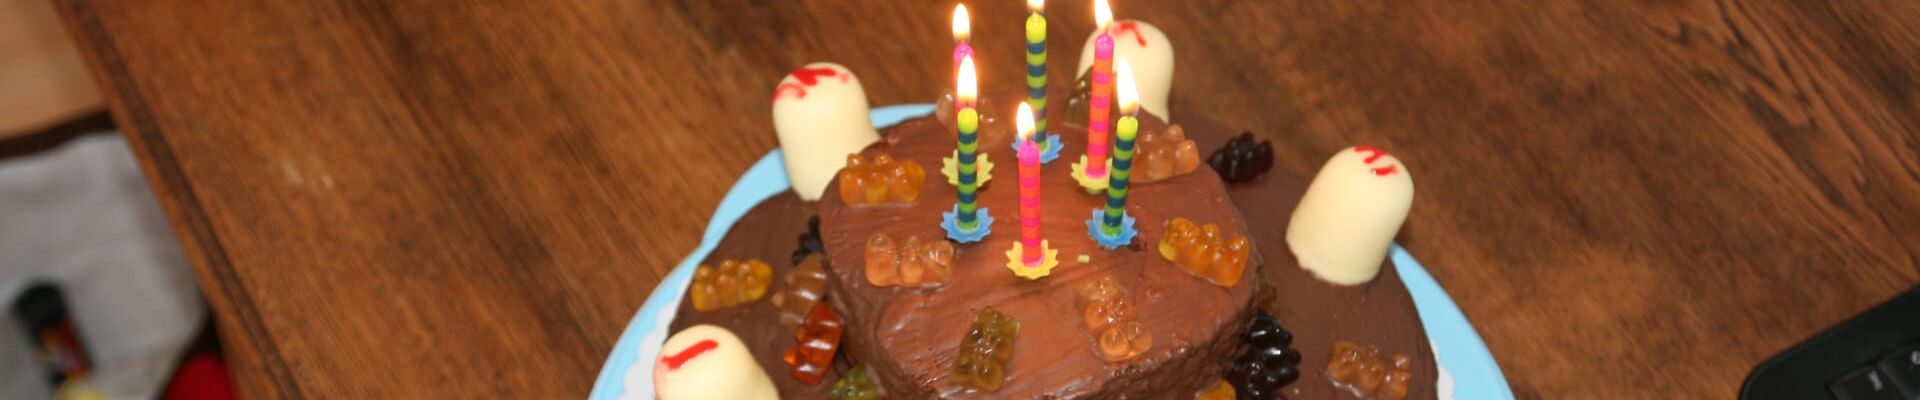 Kerzen brennen auf einer Geburtstagstorte